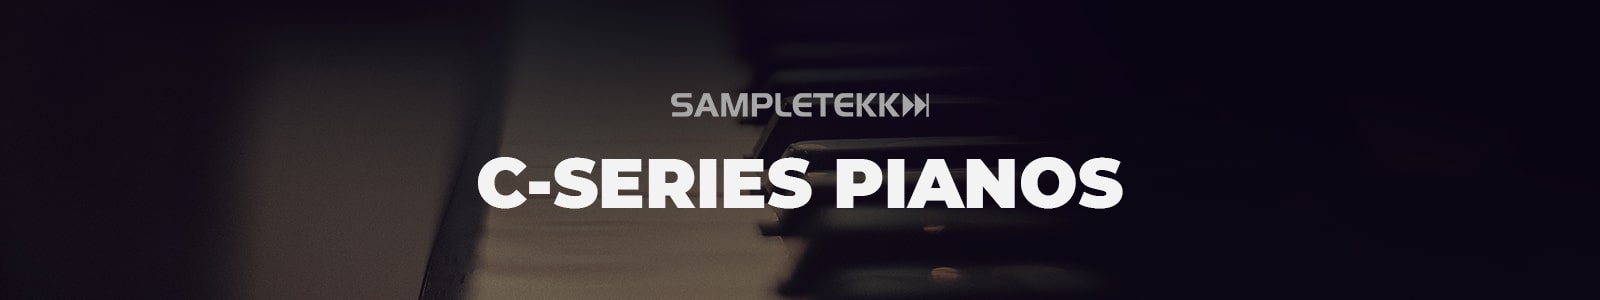 sampletekk c-series piano bundle